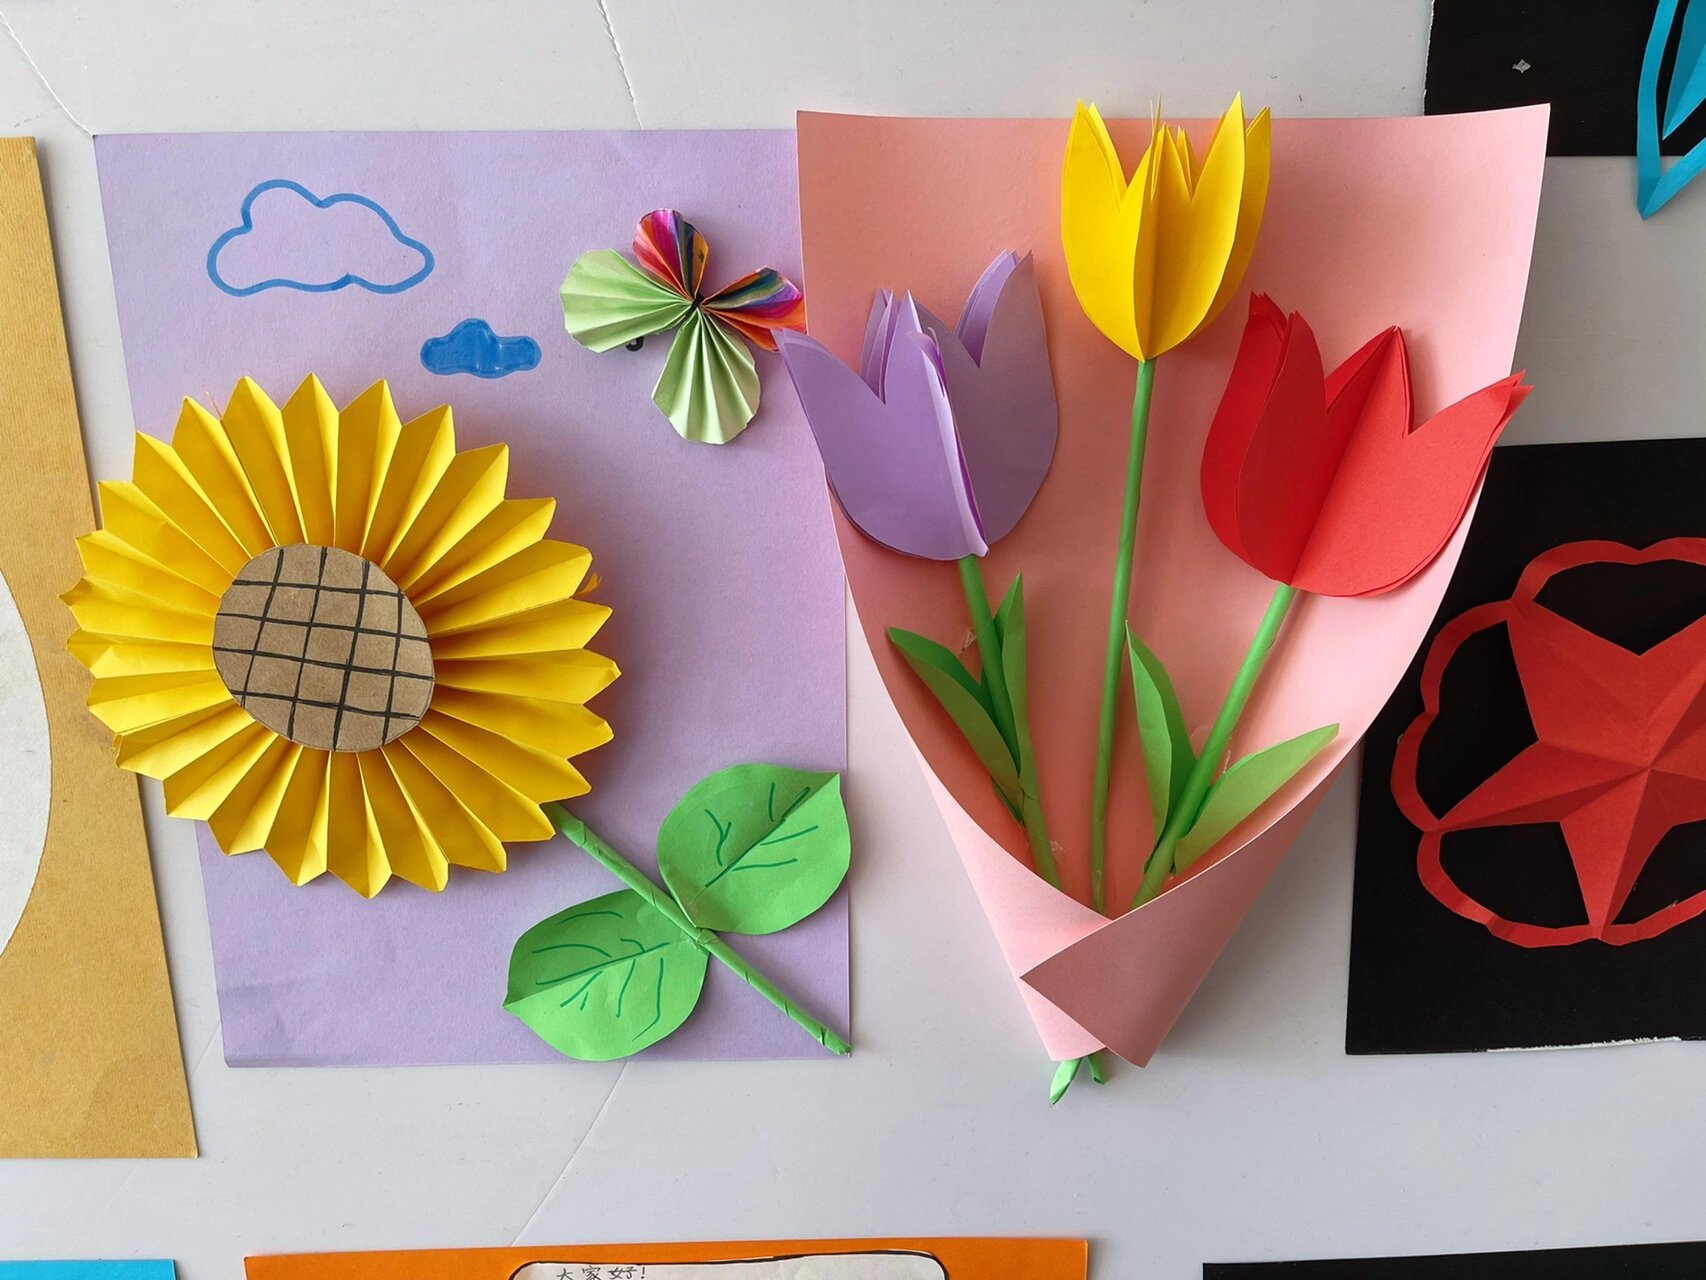 班级布置 一年级折纸社团启动: 一年级社团是折纸 有很多心灵手巧的